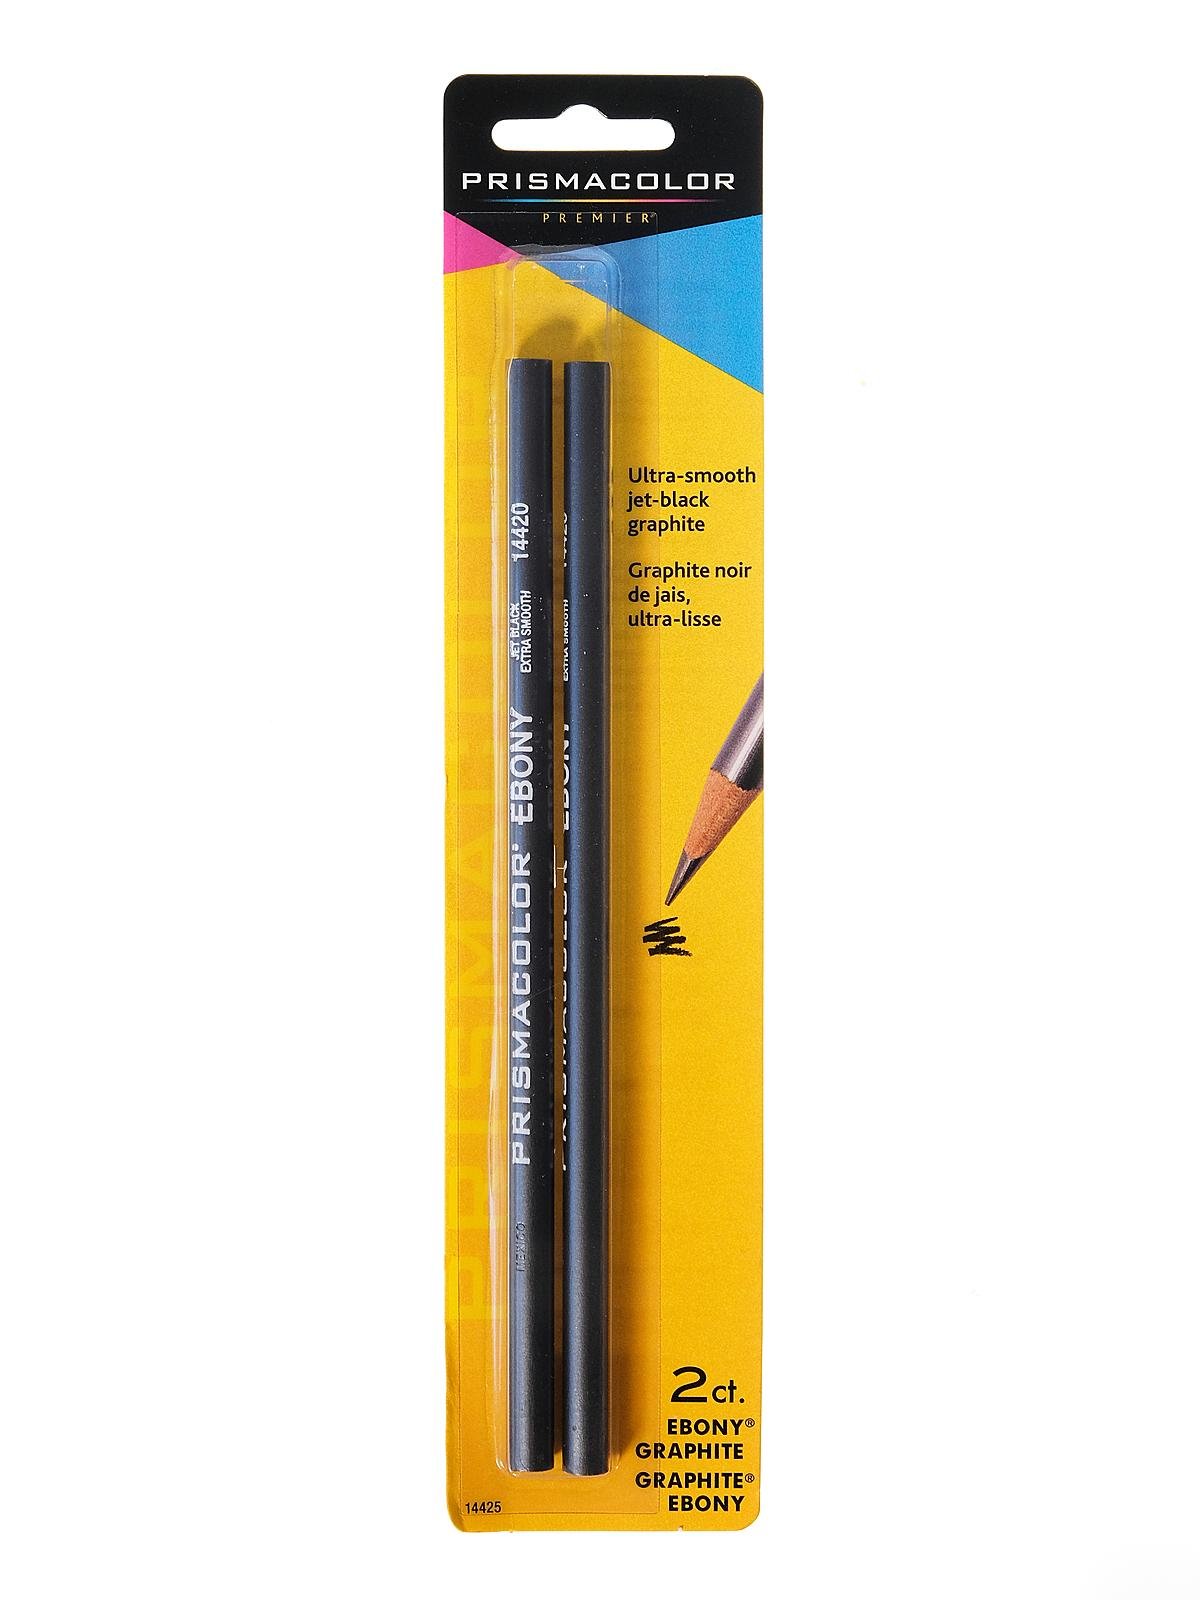 Prismacolor - Ebony Graphite Drawing Pencils